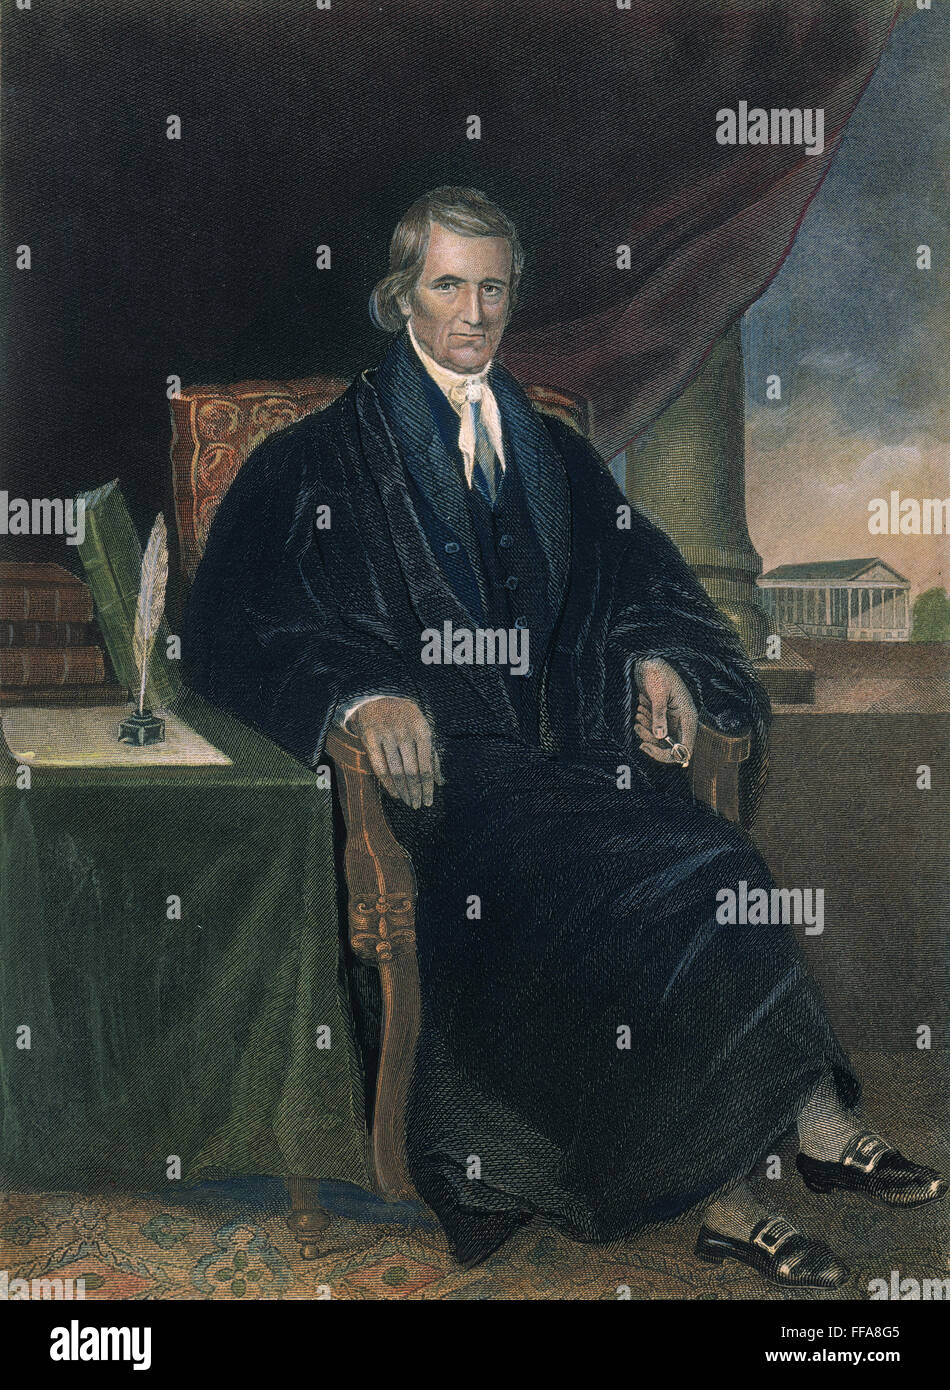 JOHN MARSHALL (1755-1835). /NChief Justicia de la Corte Suprema de los Estados Unidos, 1801-1835. Grabado en color, del siglo XIX. Foto de stock